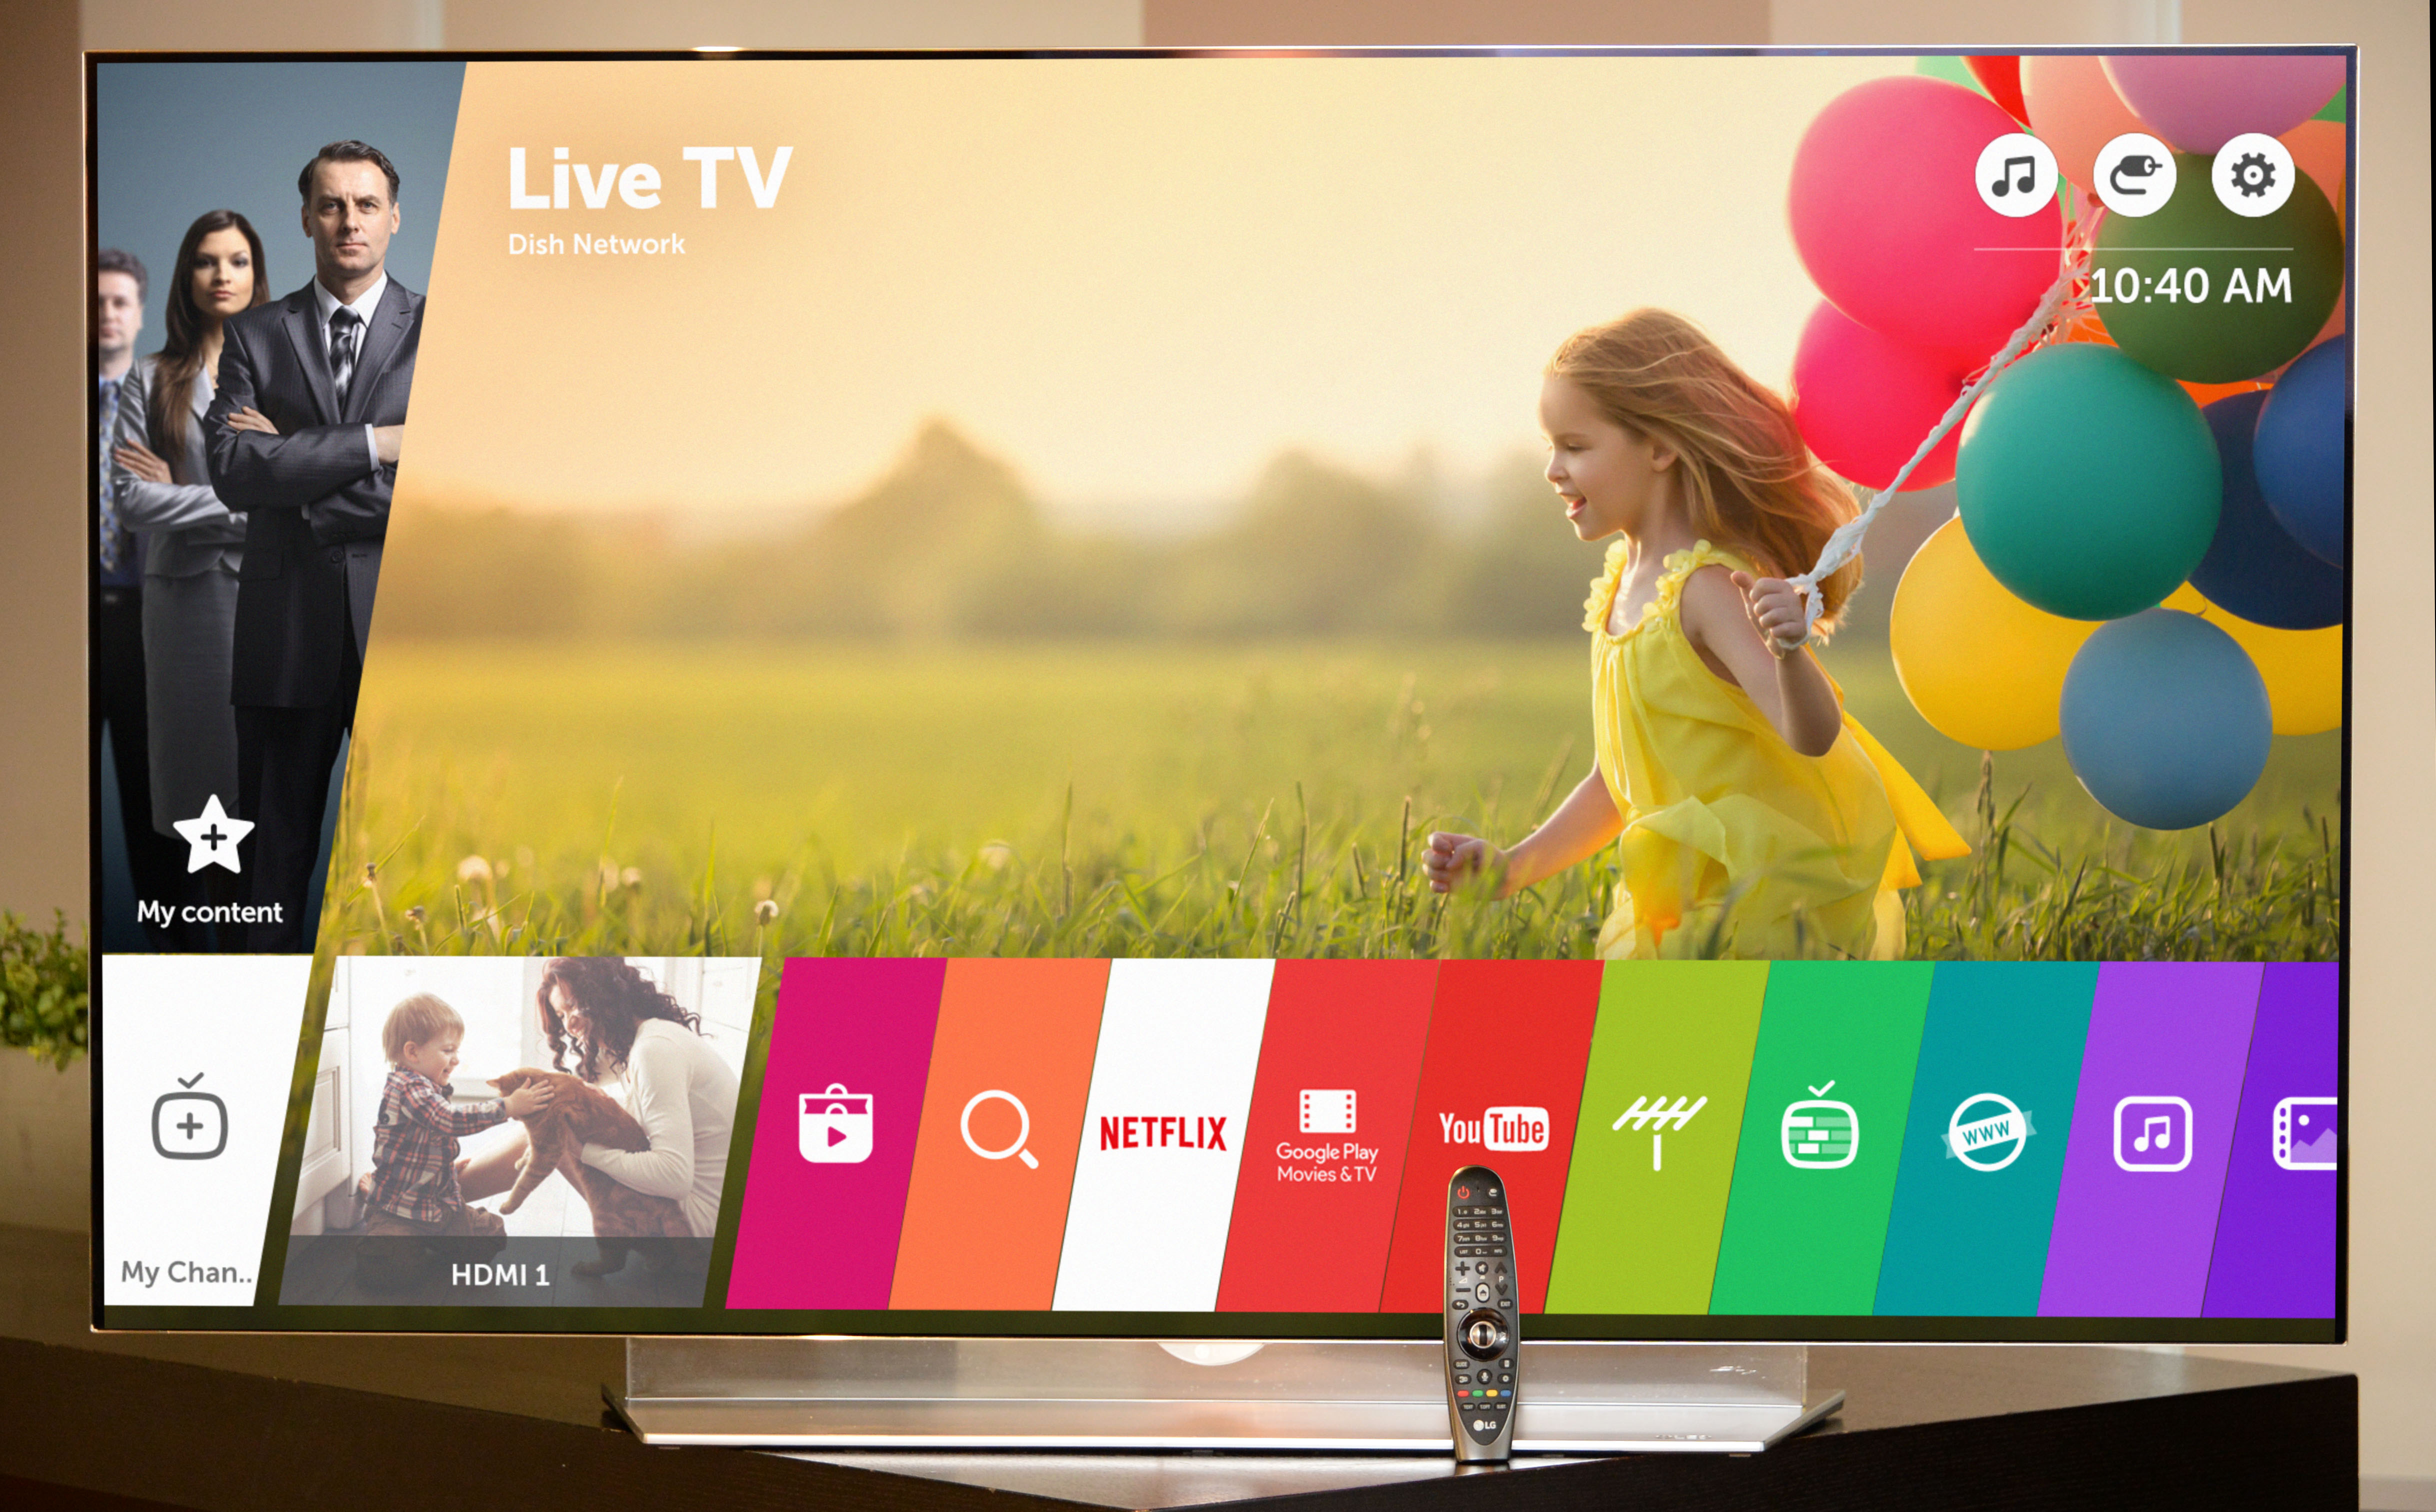 LG presentará nueva versión de su plataforma webOS para smart TV